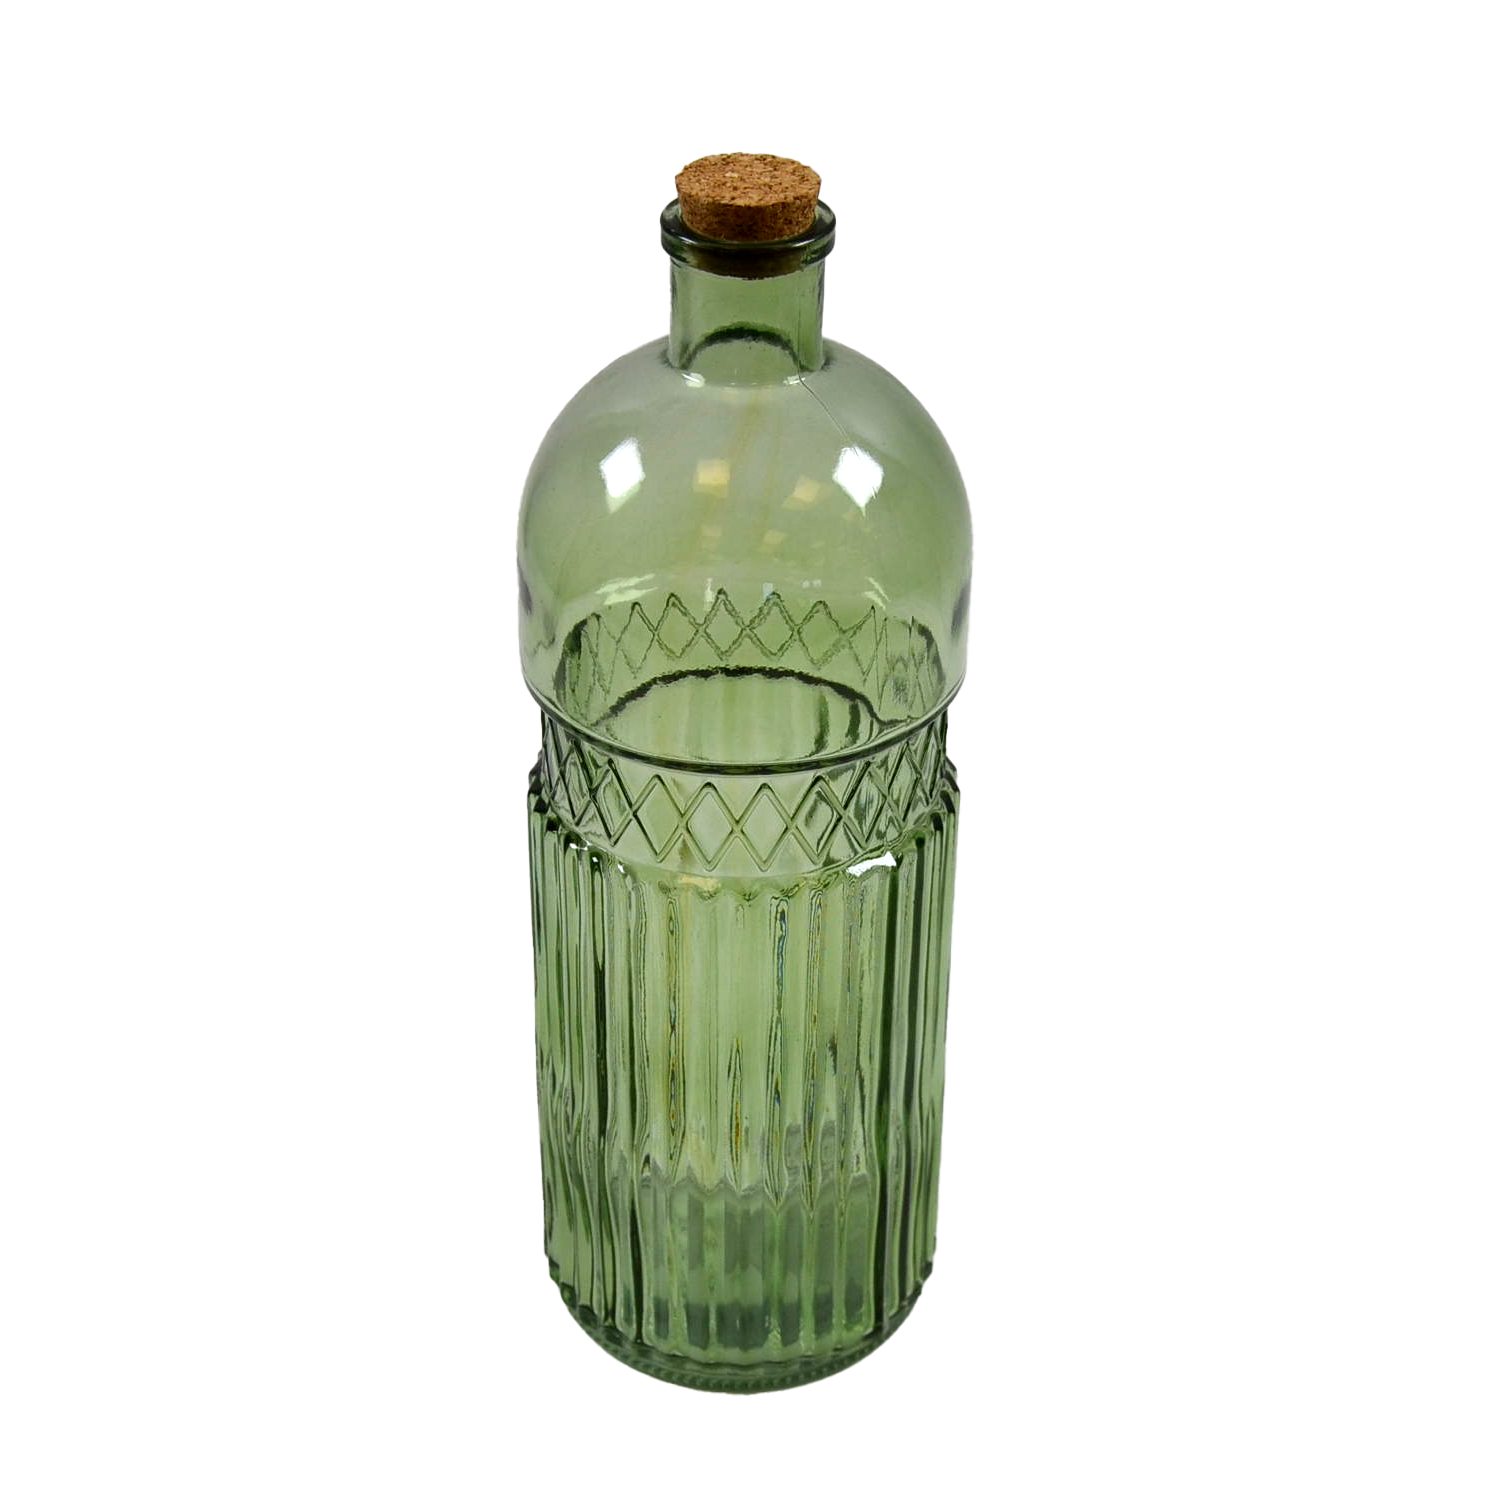 B&S Dekofigur Deko 11x31 cm Glas grün Flasche